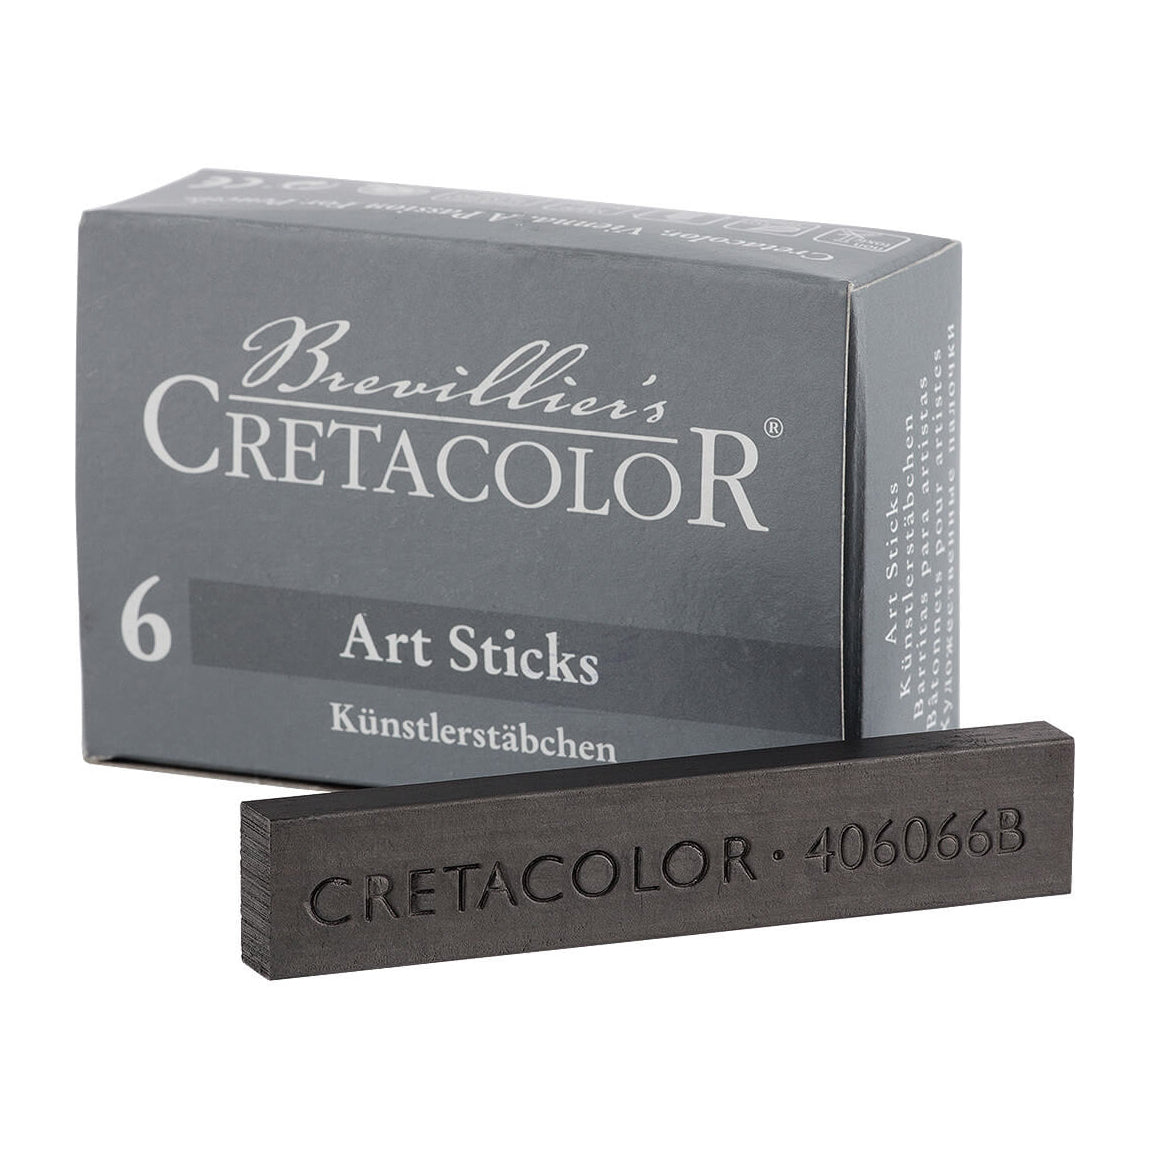 Cretacolor Art Stick, Groot, 6 stuks